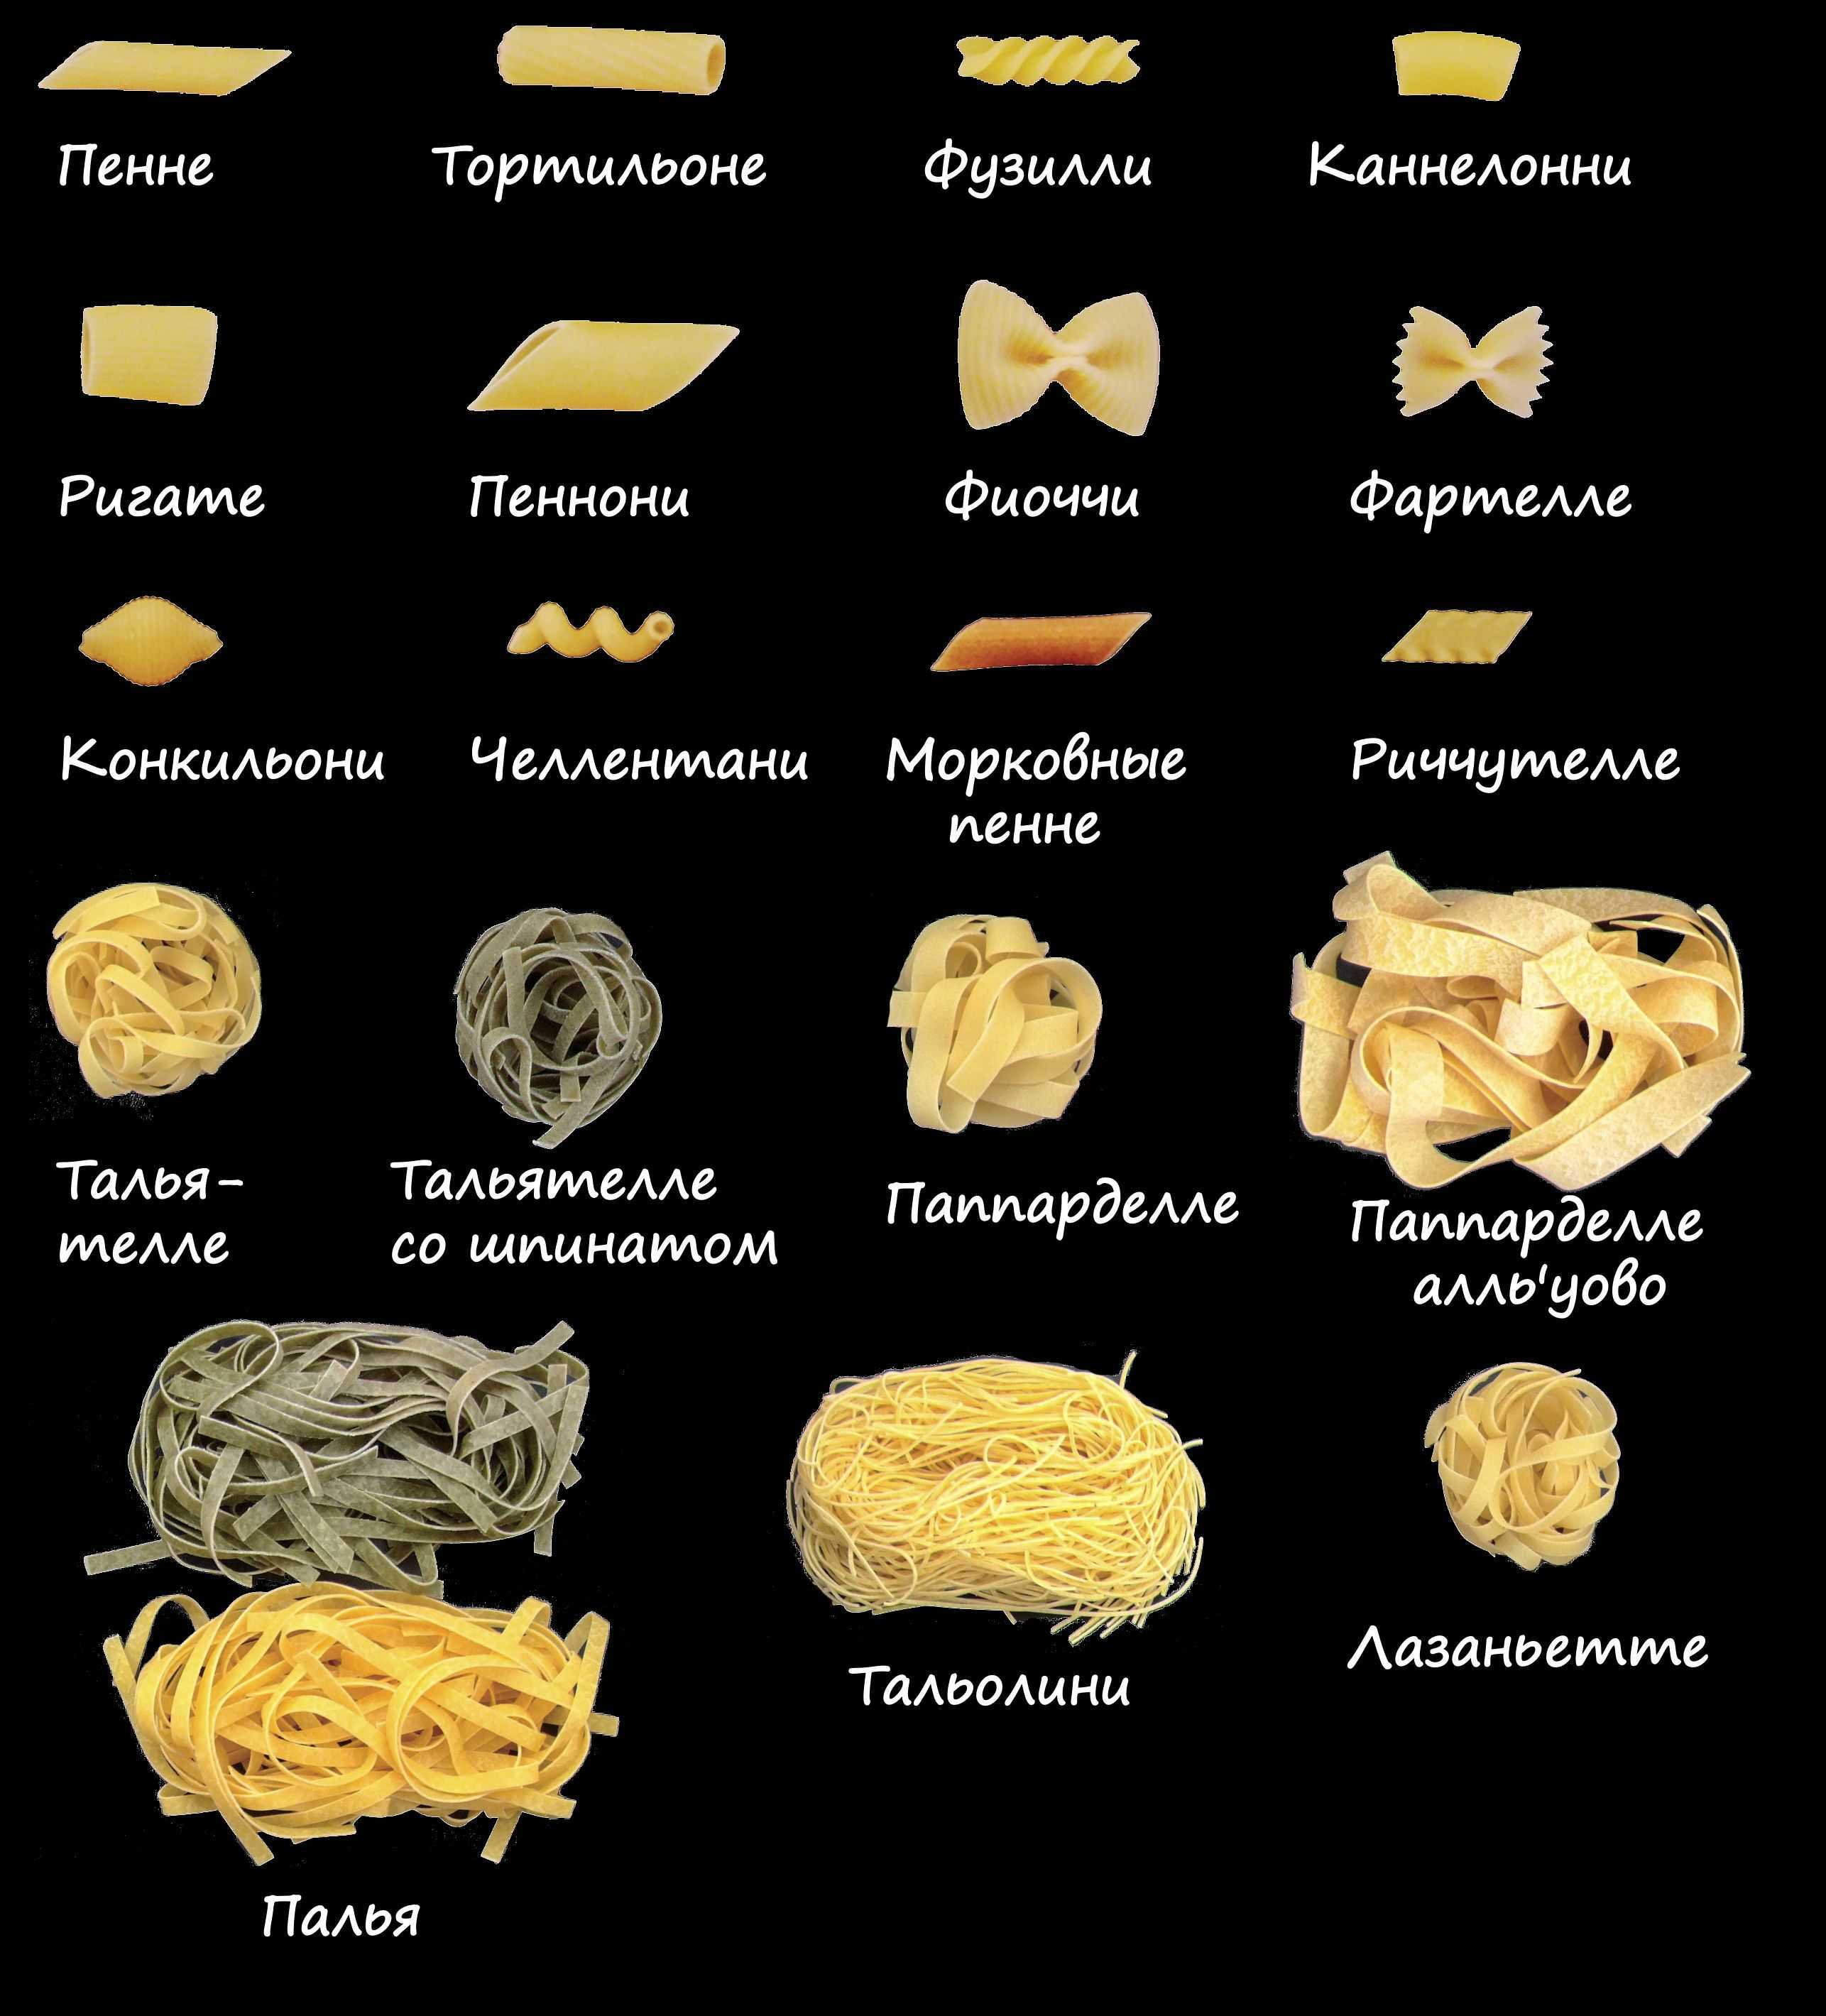 Мы составили подробный очень подробный гид по всем видам пасты, а также выяснили у диетолога Анны Ивашкевич, сколько макарон можно есть, чтобы не растолстеть